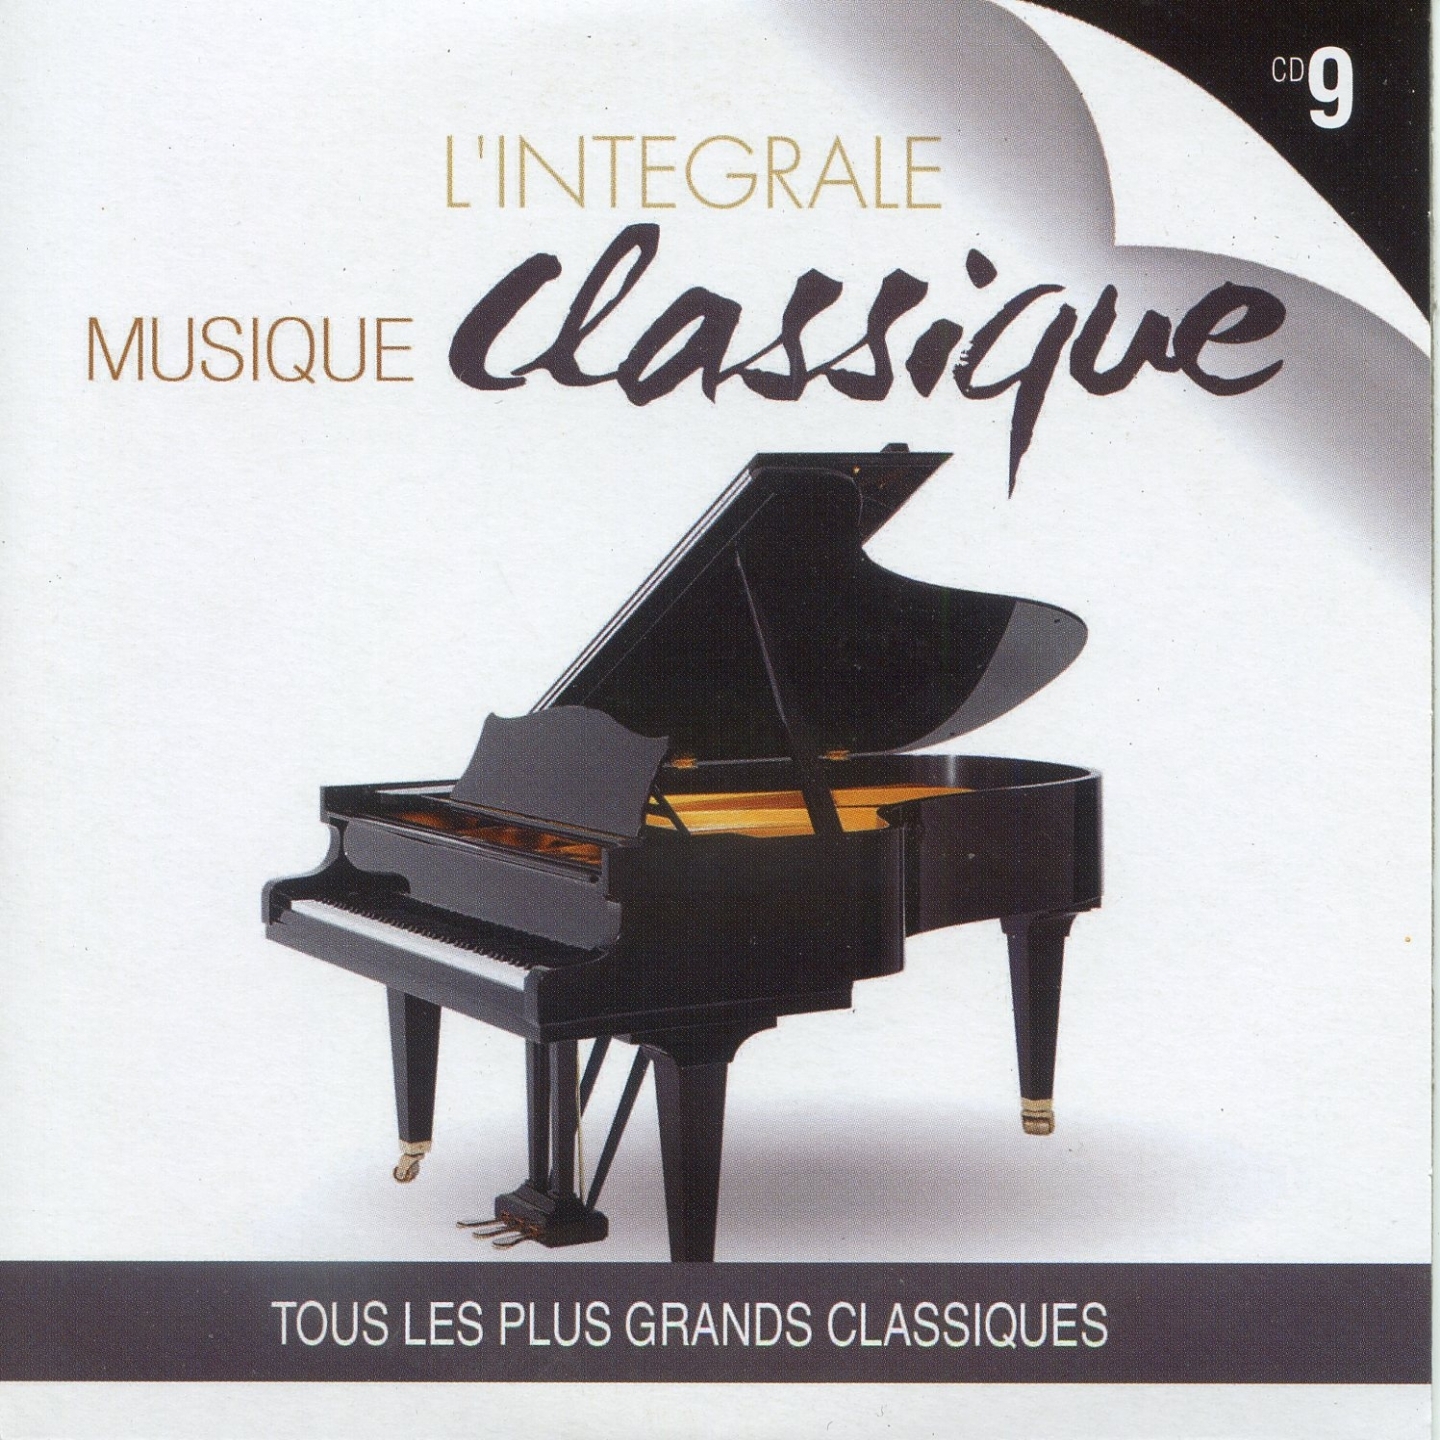 L' inte grale musique classique, vol. 9